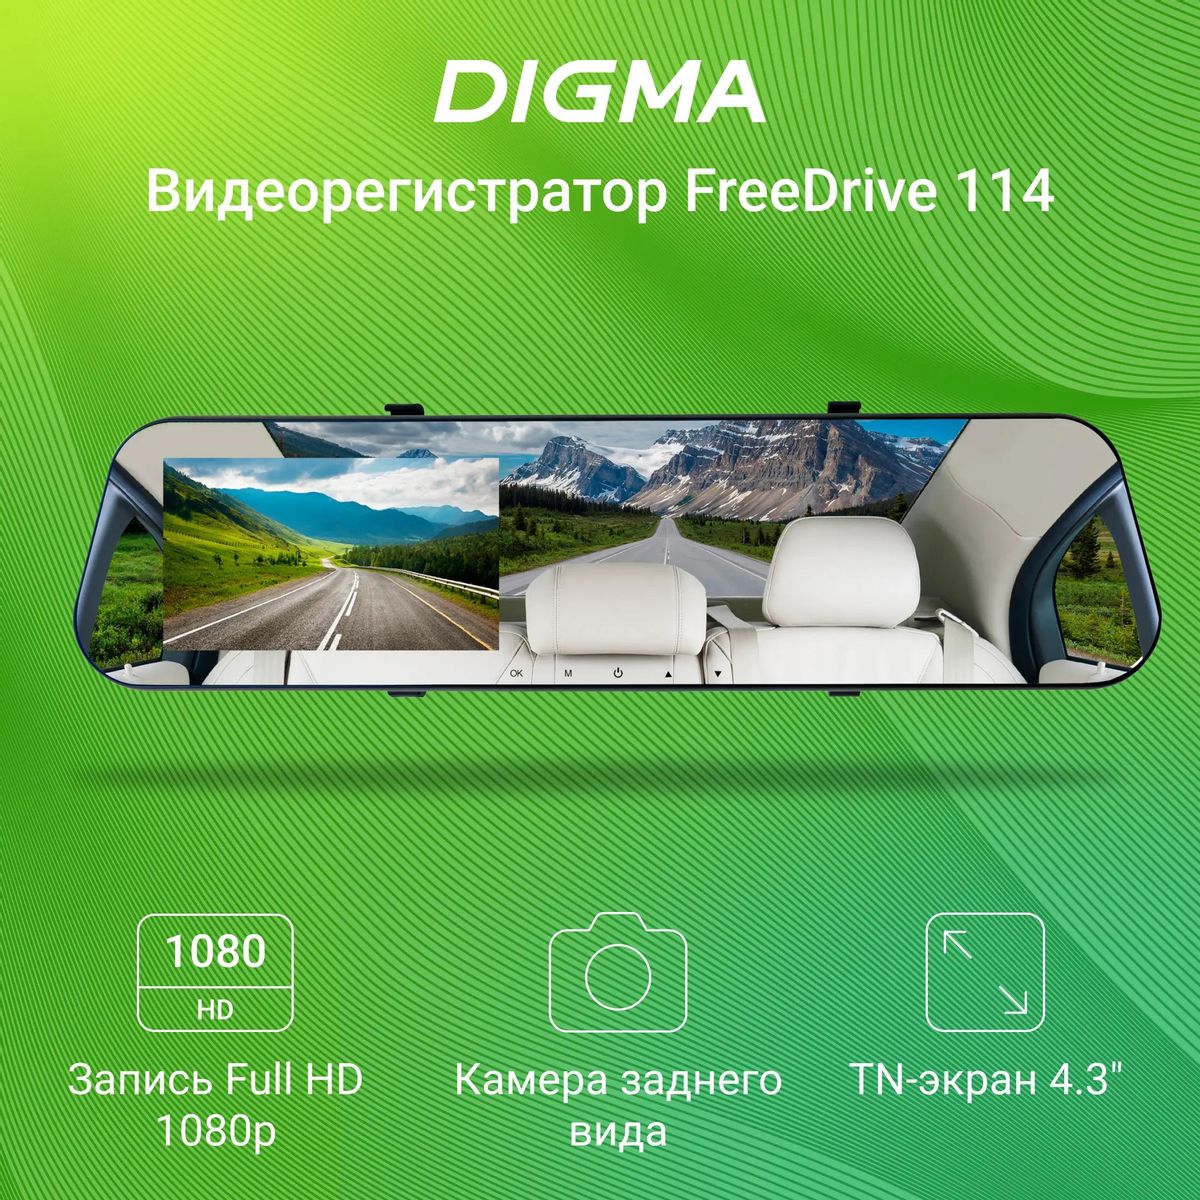 Видеорегистратор Digma FreeDrive 114 Mirror,  черный